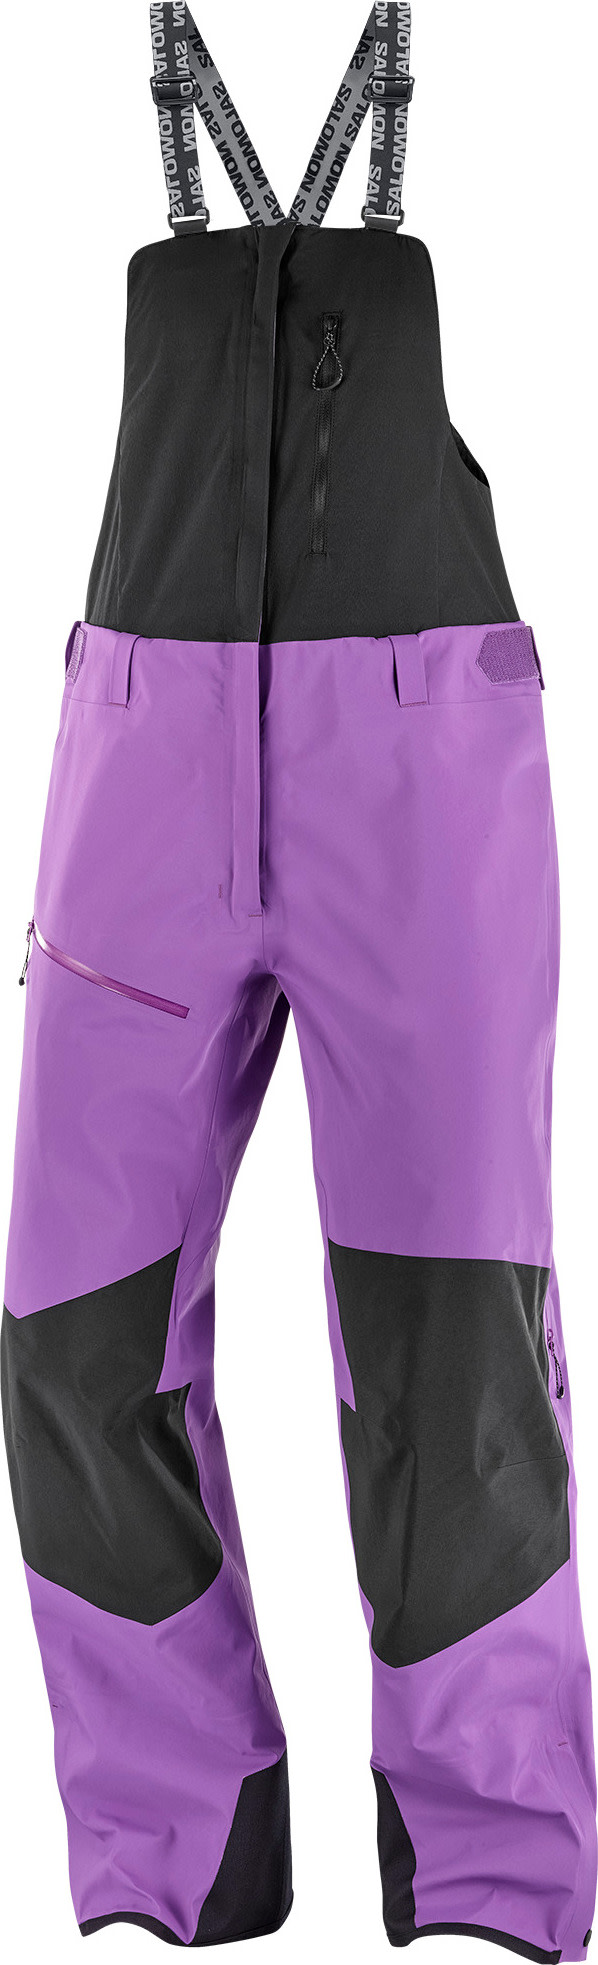 Women’s Moon Patrol GORE-TEX Bib Pants Royal Purple/